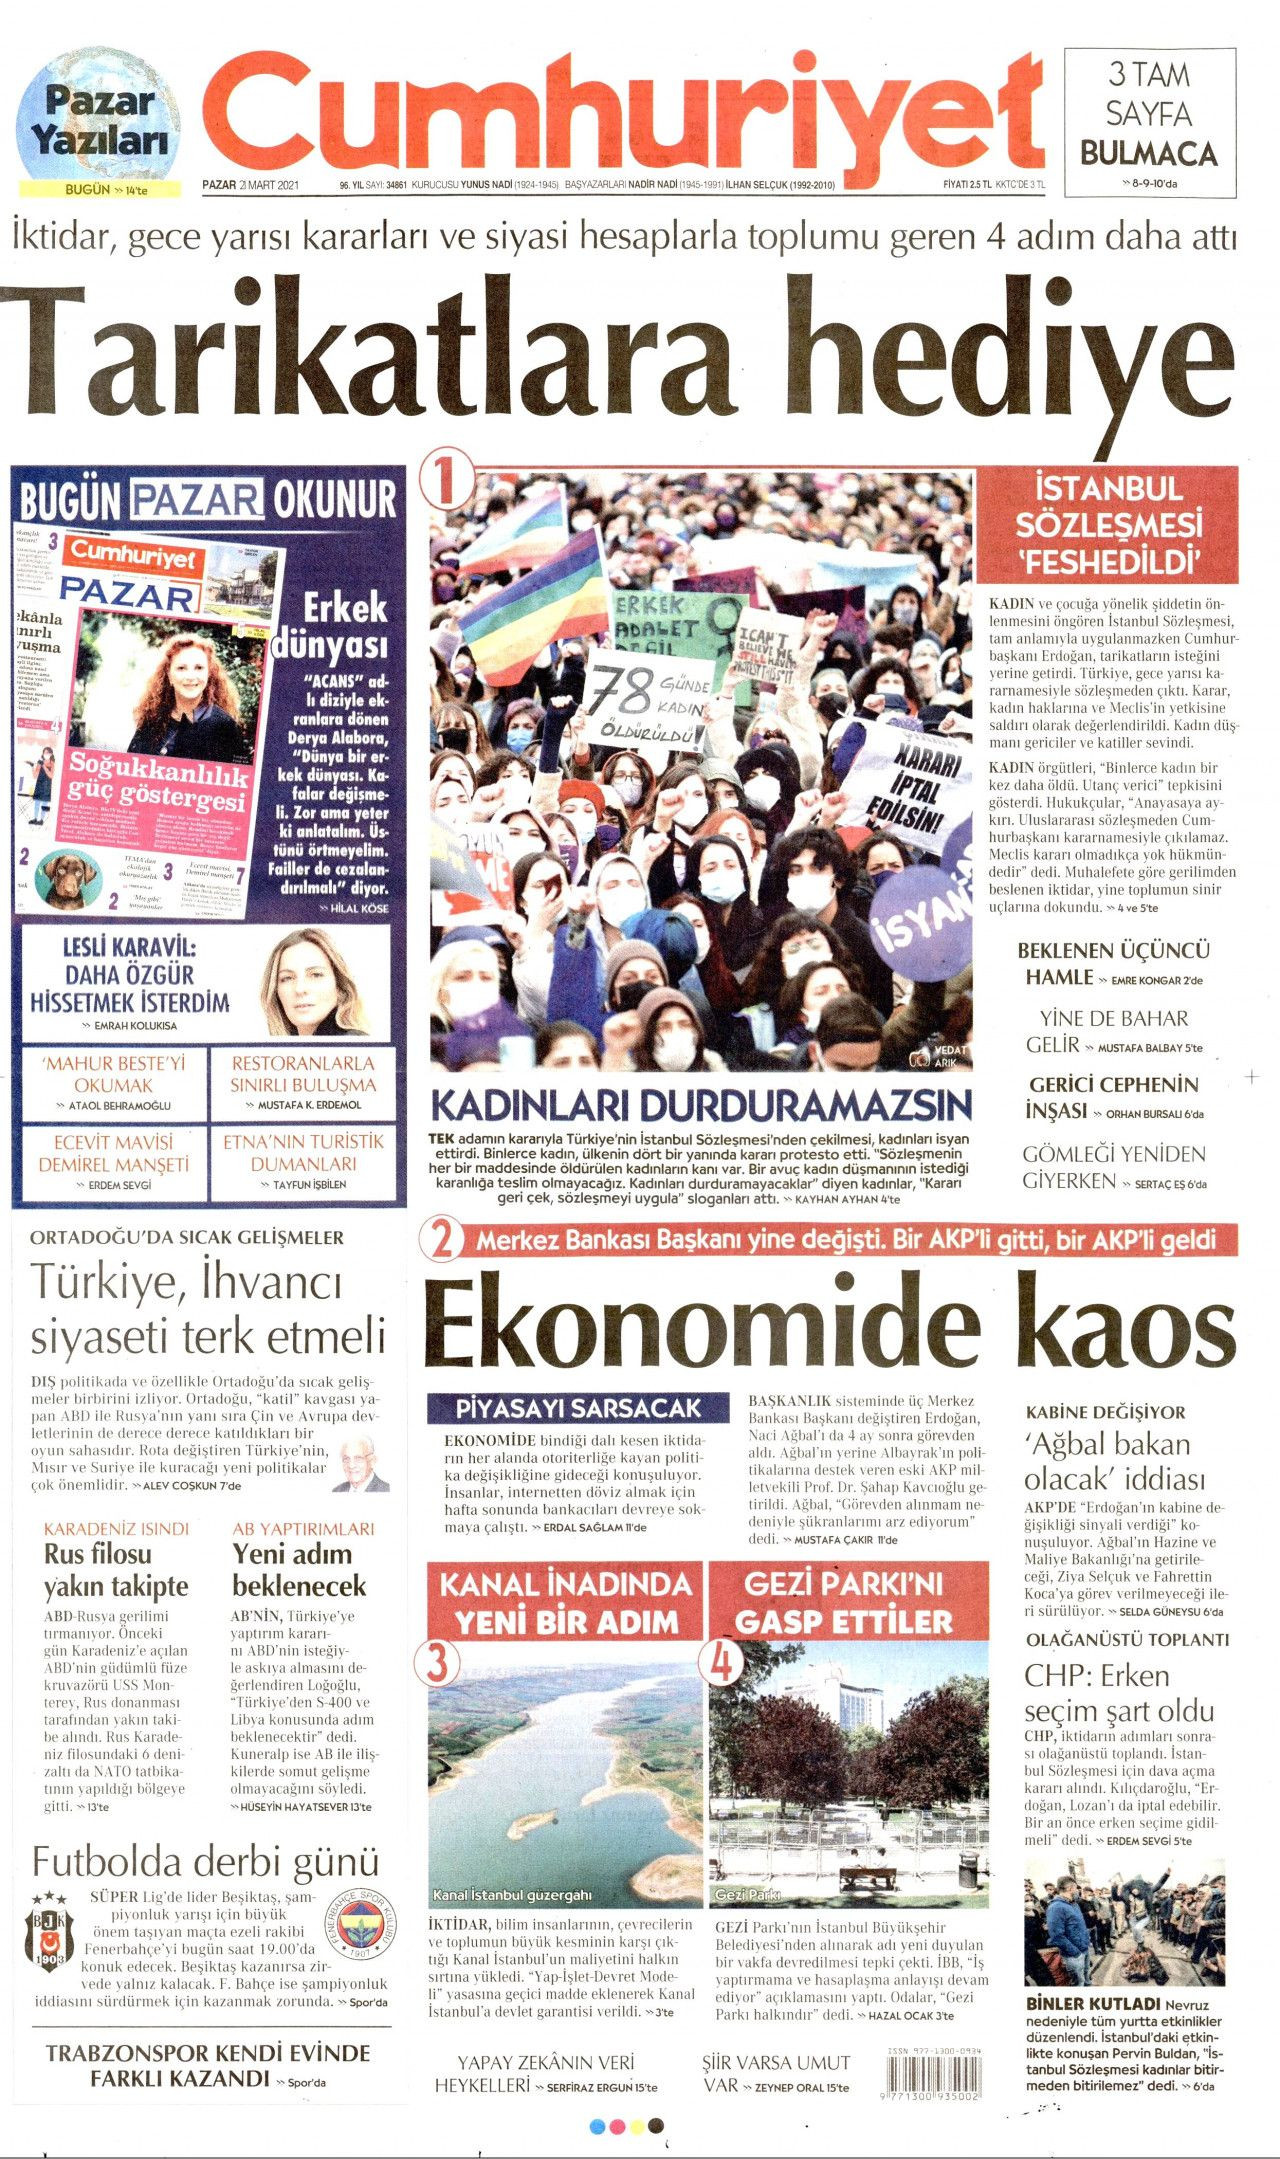 Gazete manşetlerinde İstanbul Sözleşmesi feshi! Kim ne yazdı? - Sayfa 4